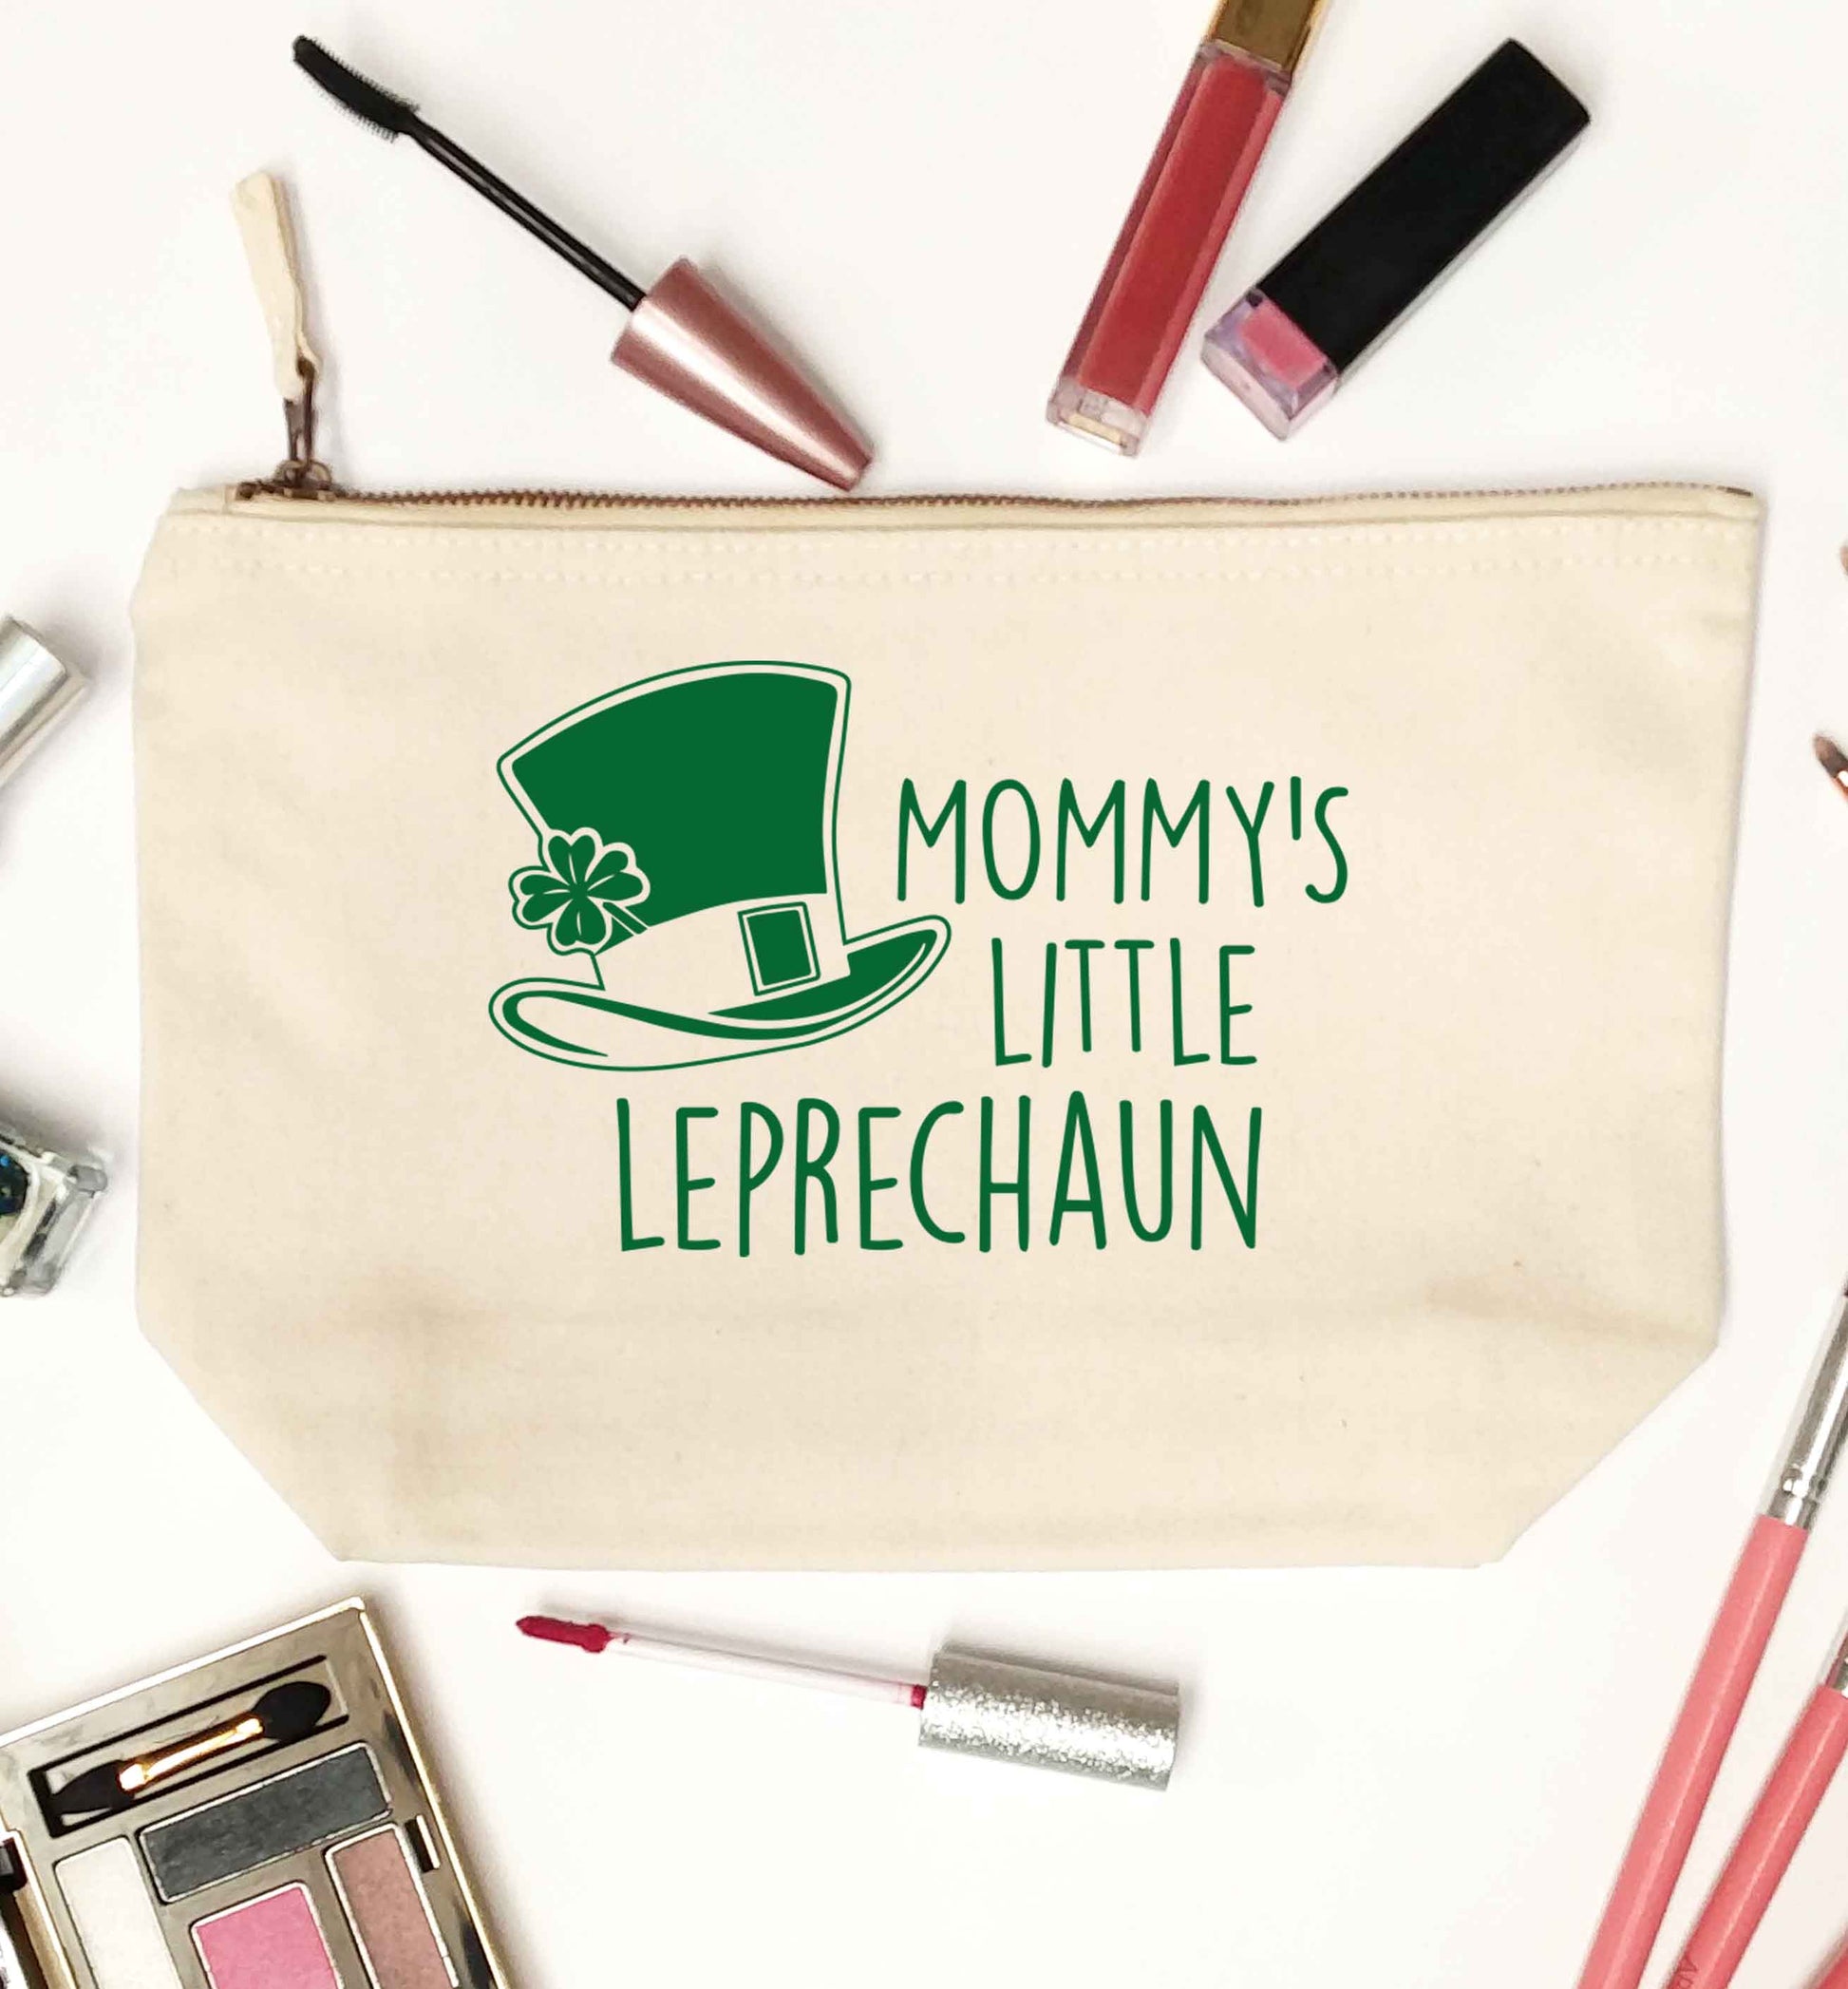 Mommy's little leprechaun natural makeup bag